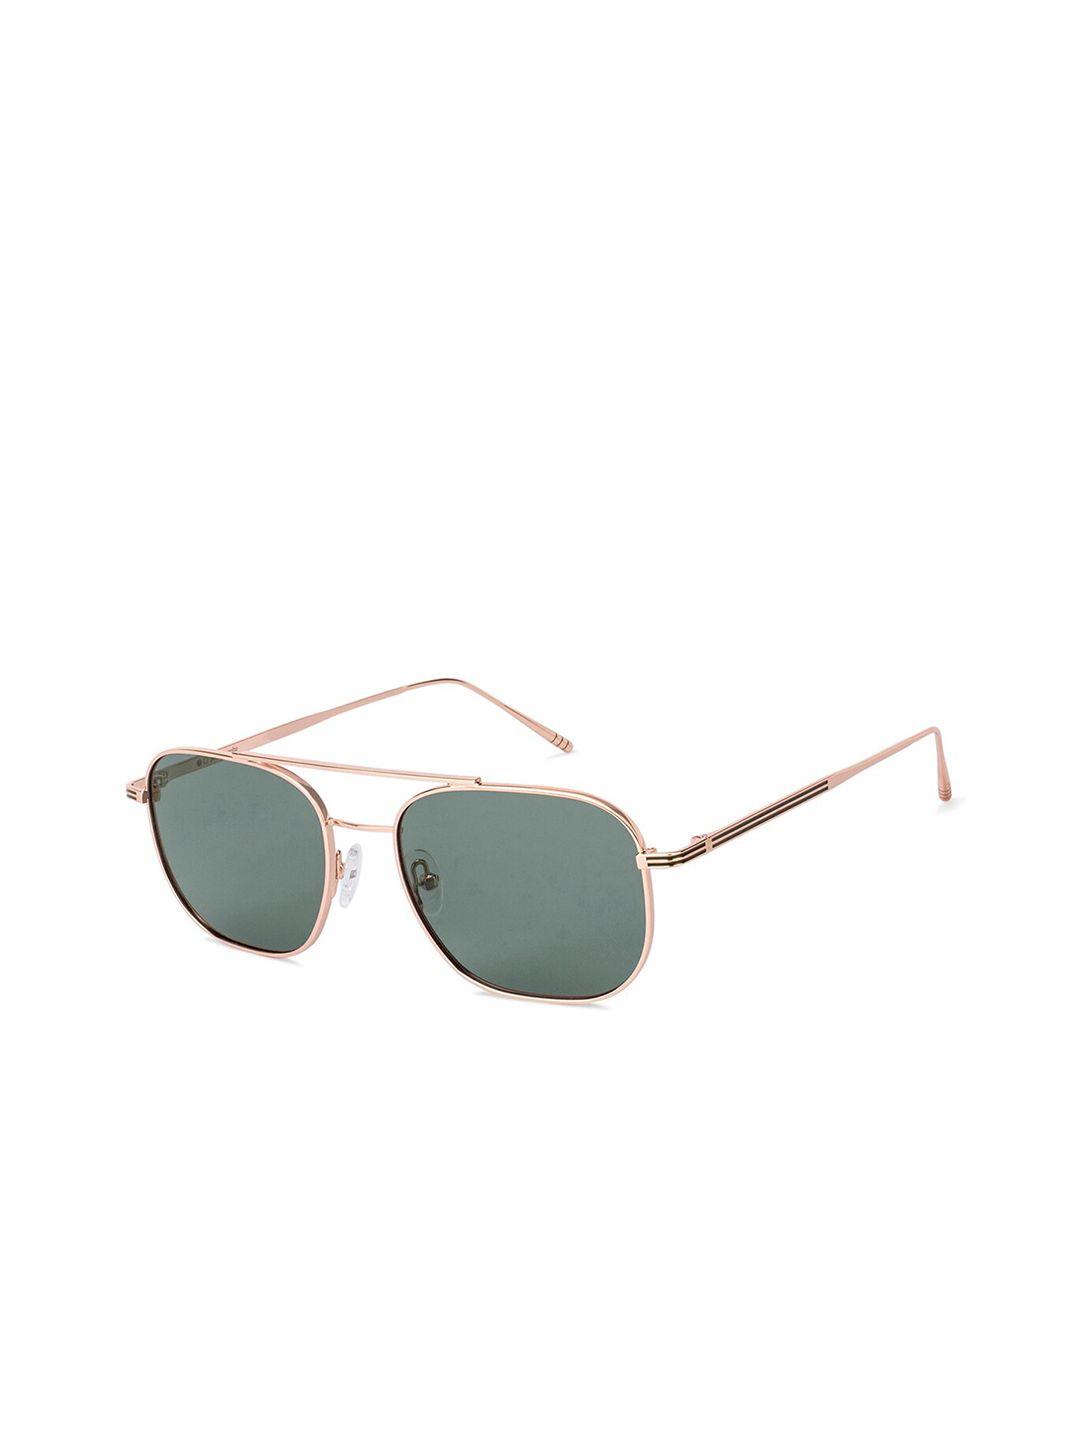 John Jacobs Unisex Green Lens & Gold-Toned Polarised Square Sunglasses